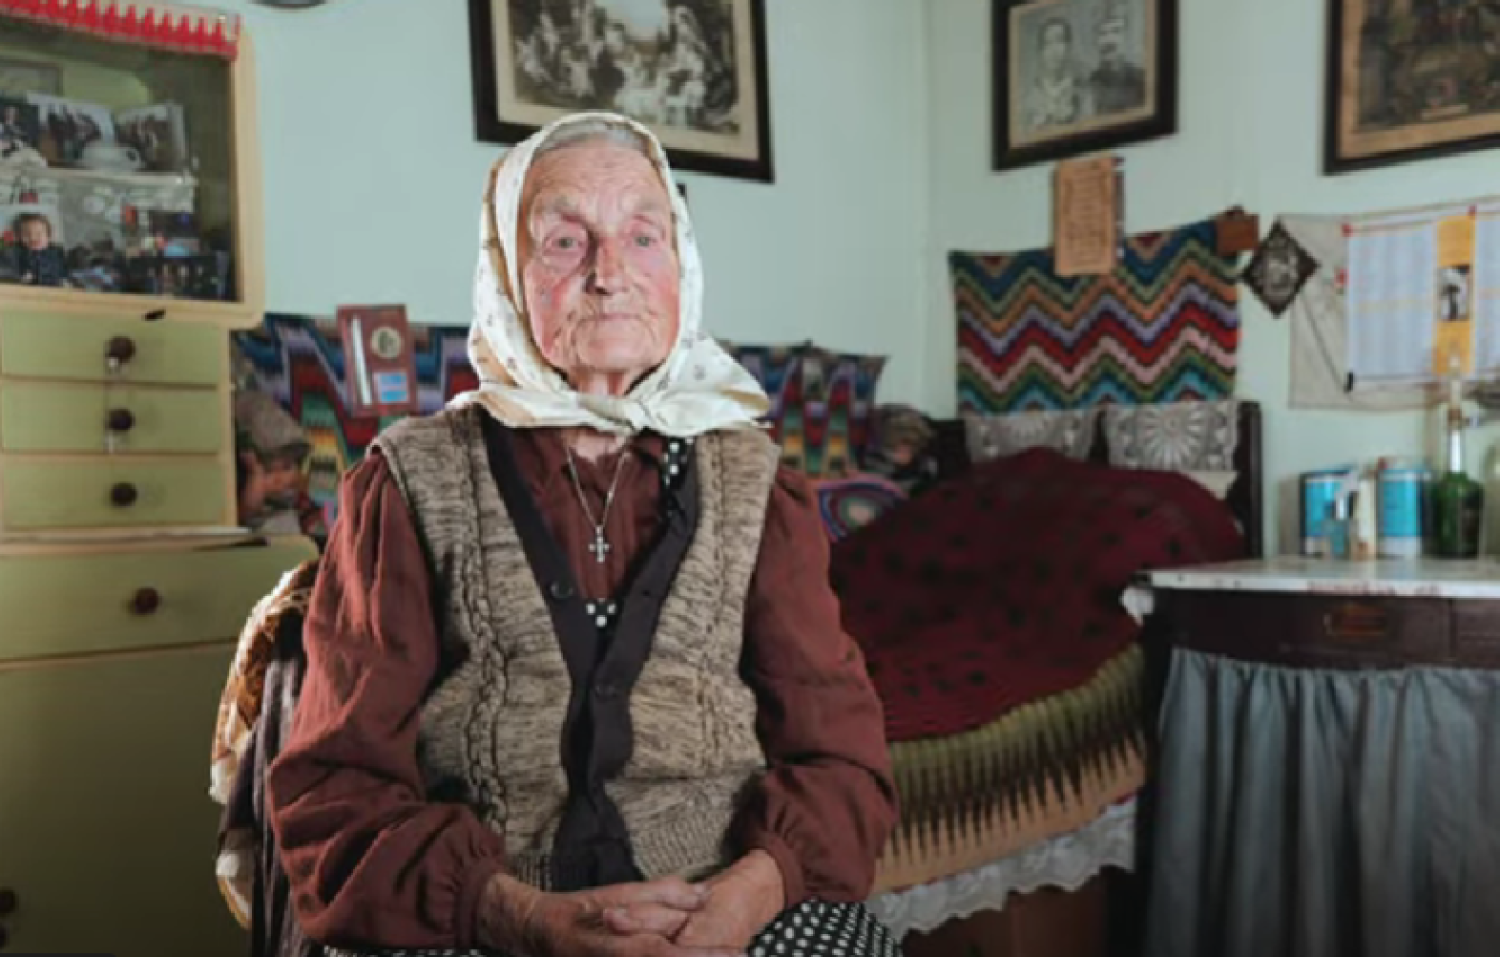 Magyarnak lenni a legjobb – Amália néni 94 évesen is tehenet tart, zöldséget termeszt a kertben